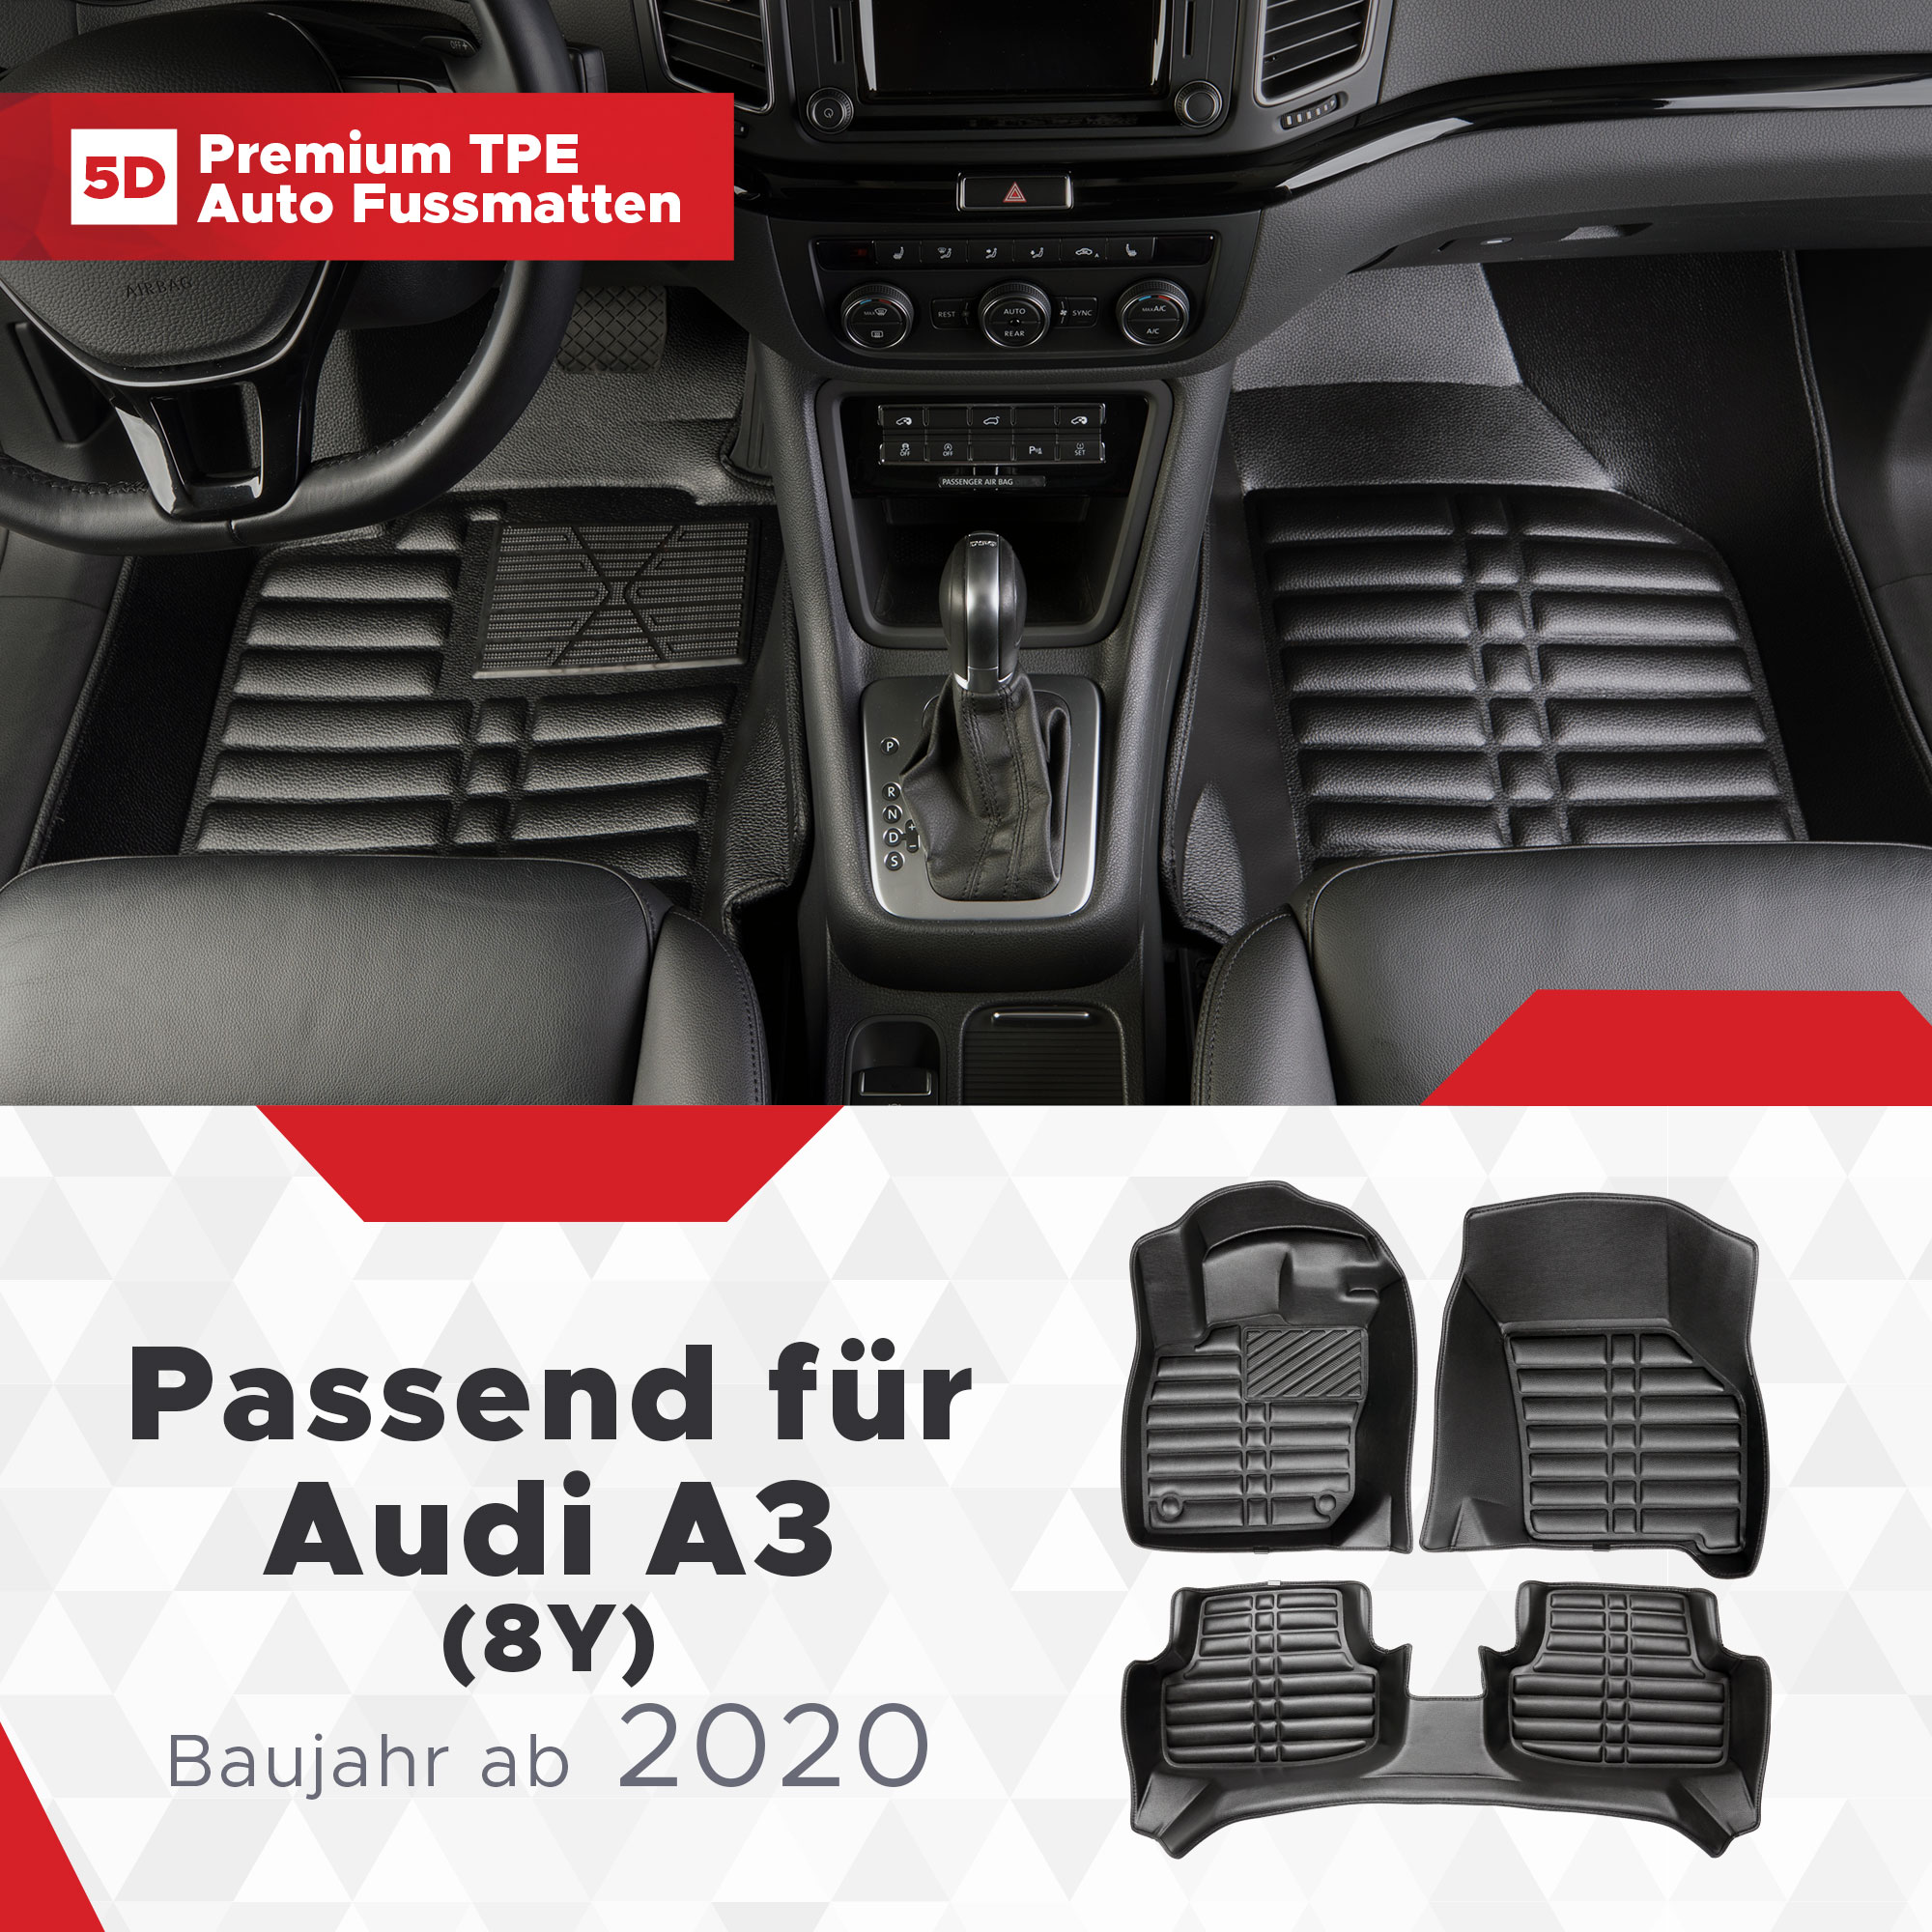 5D Audi A3 (8Y) Fussmatten Bj ab 2020 TPE